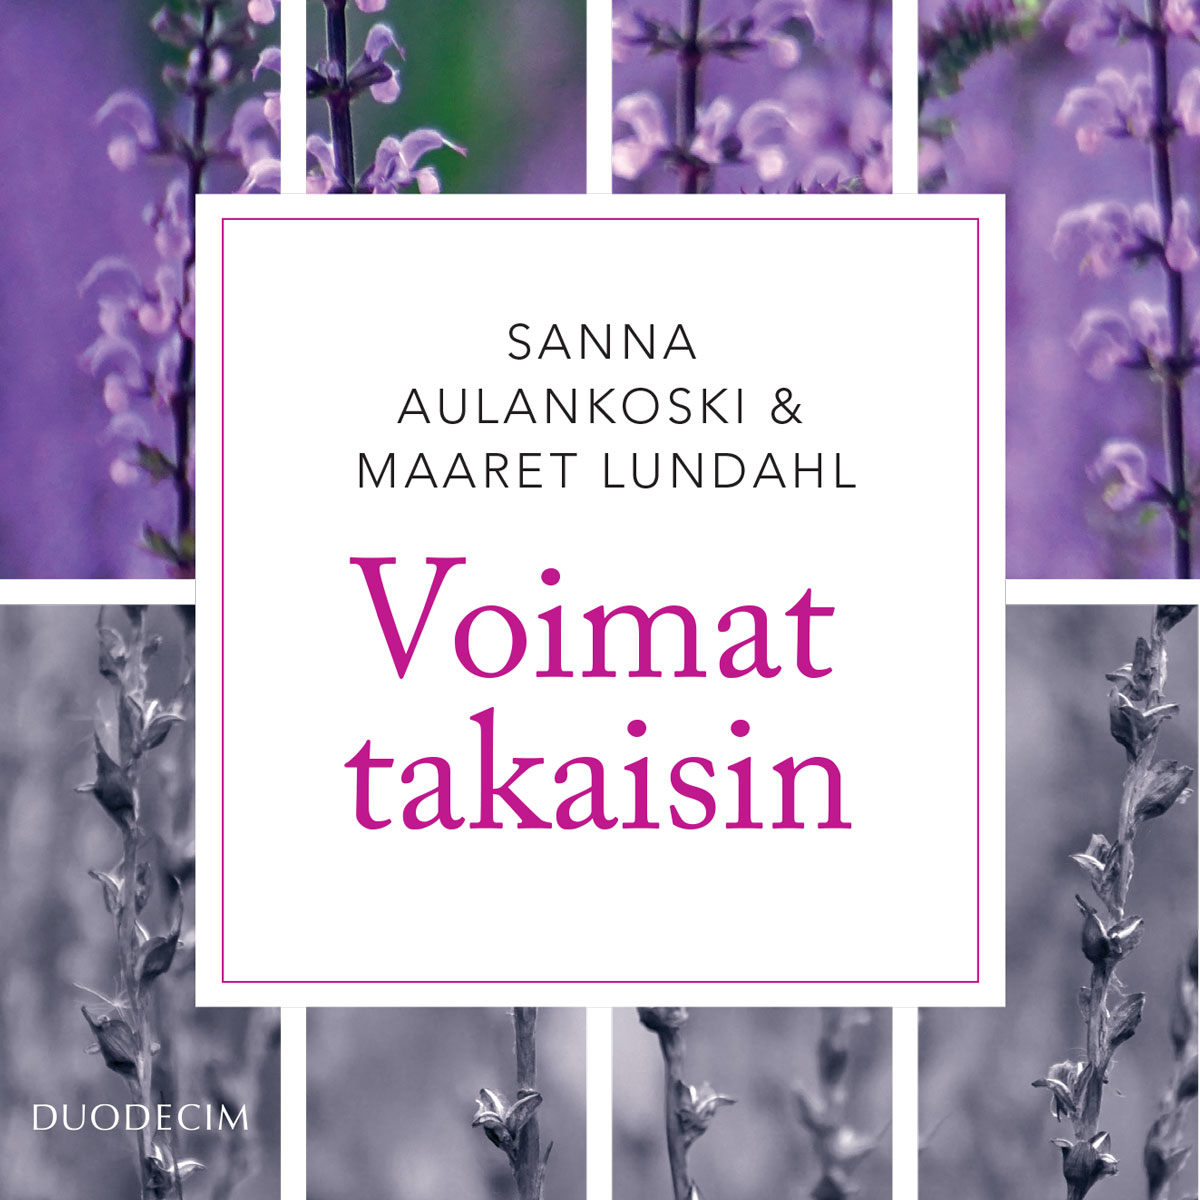 Aulankoski, Sanna - Voimat takaisin: Tietoa ja dialogia työuupumuksesta, audiobook